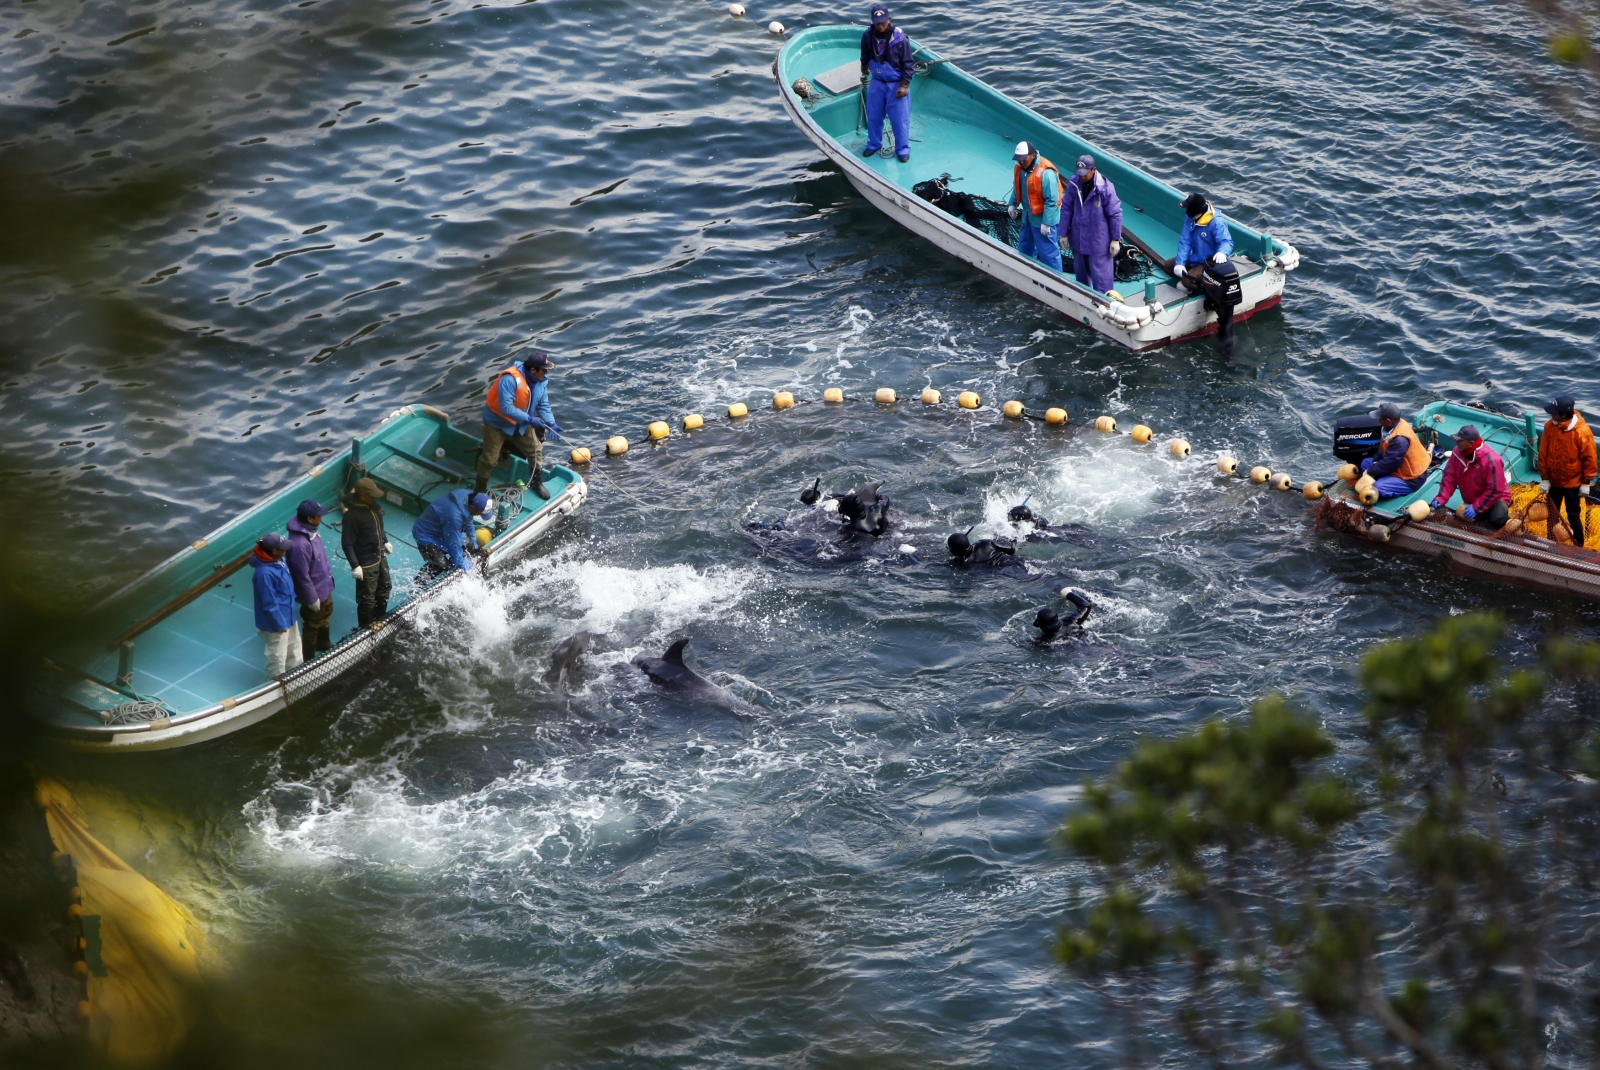 Dolphin hunt in Taiji